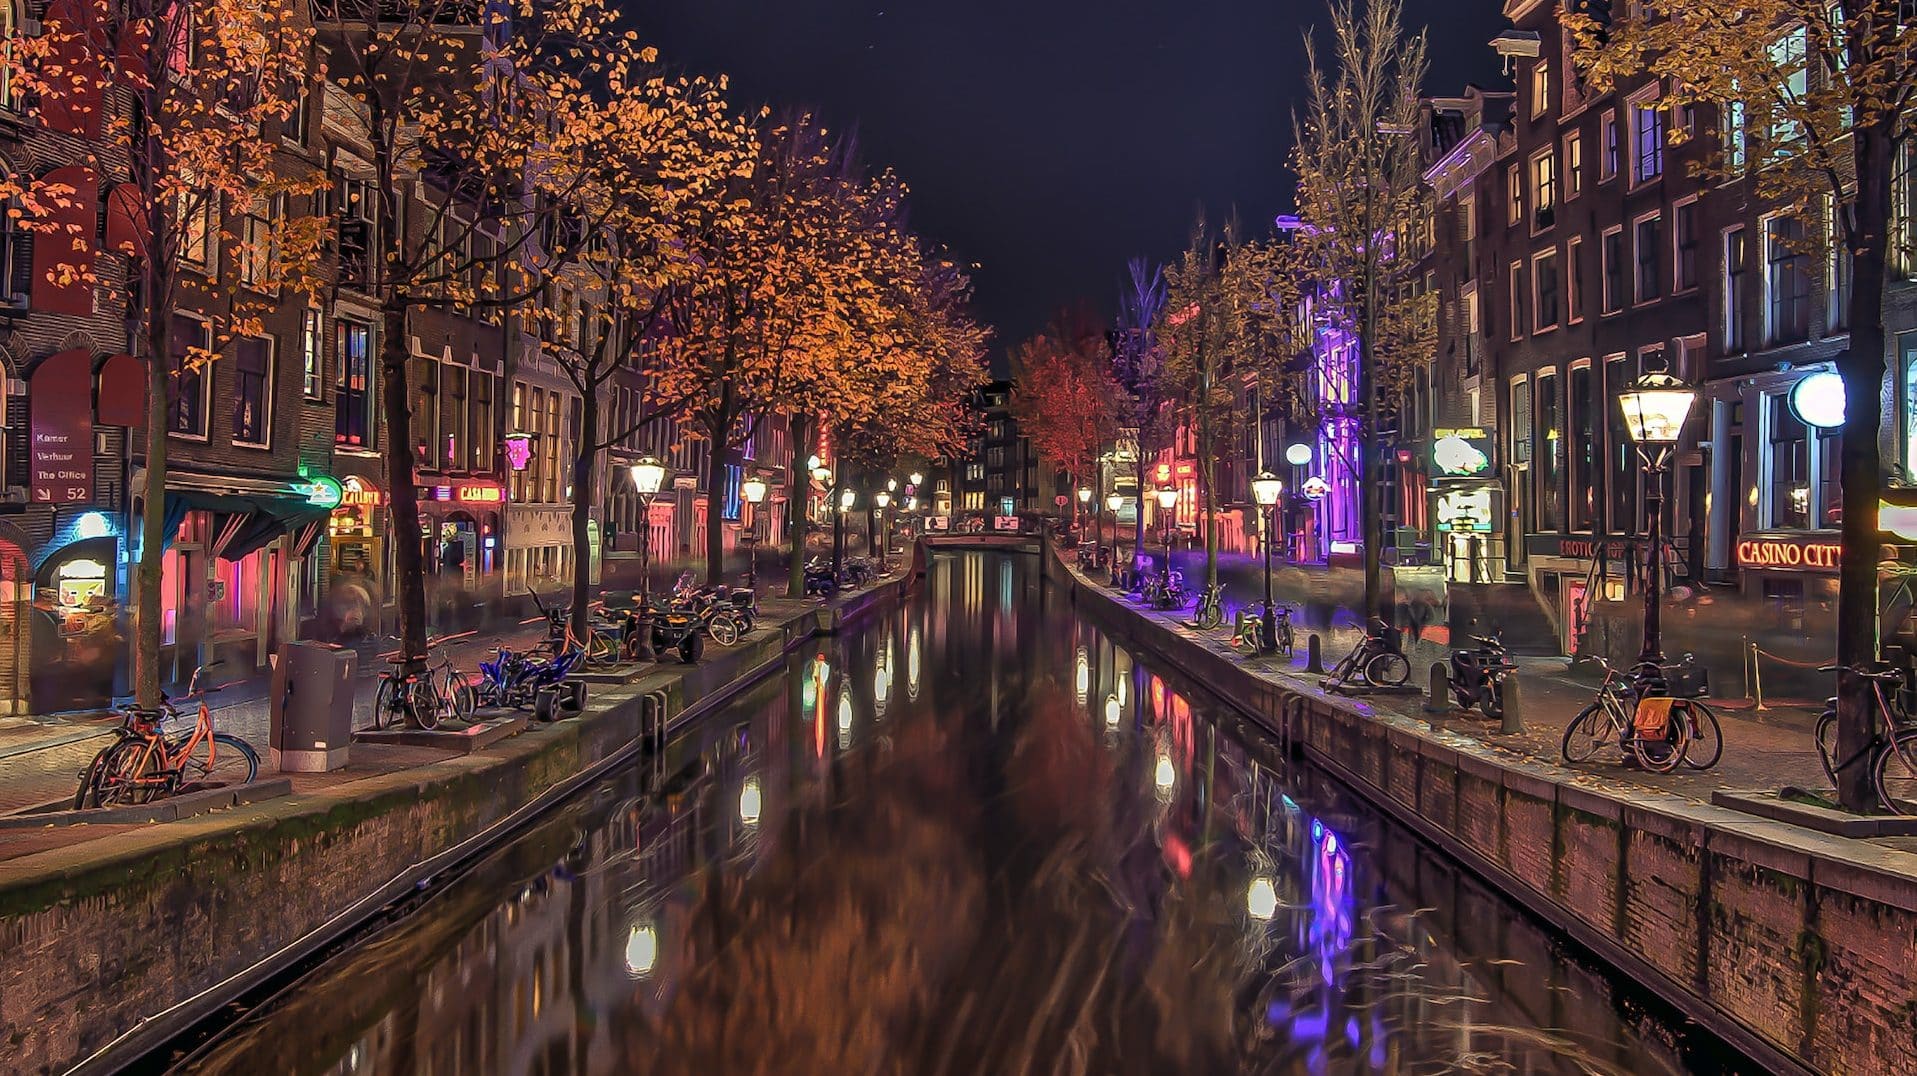 Il leggendario Quartiere a Luci Rosse è uno dei quartieri preferiti dai turisti di Amsterdam.